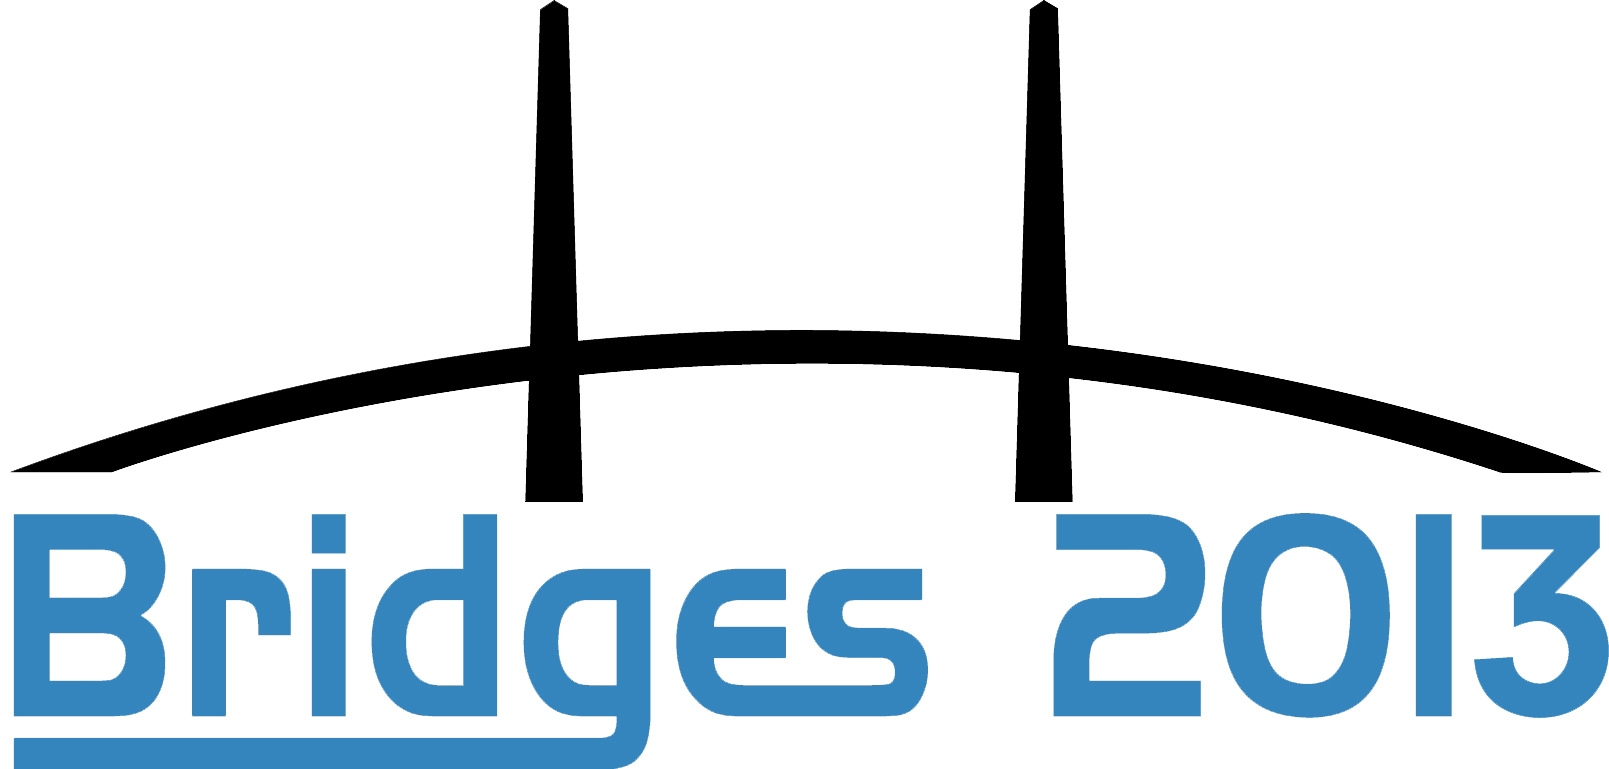 Bridges 2013